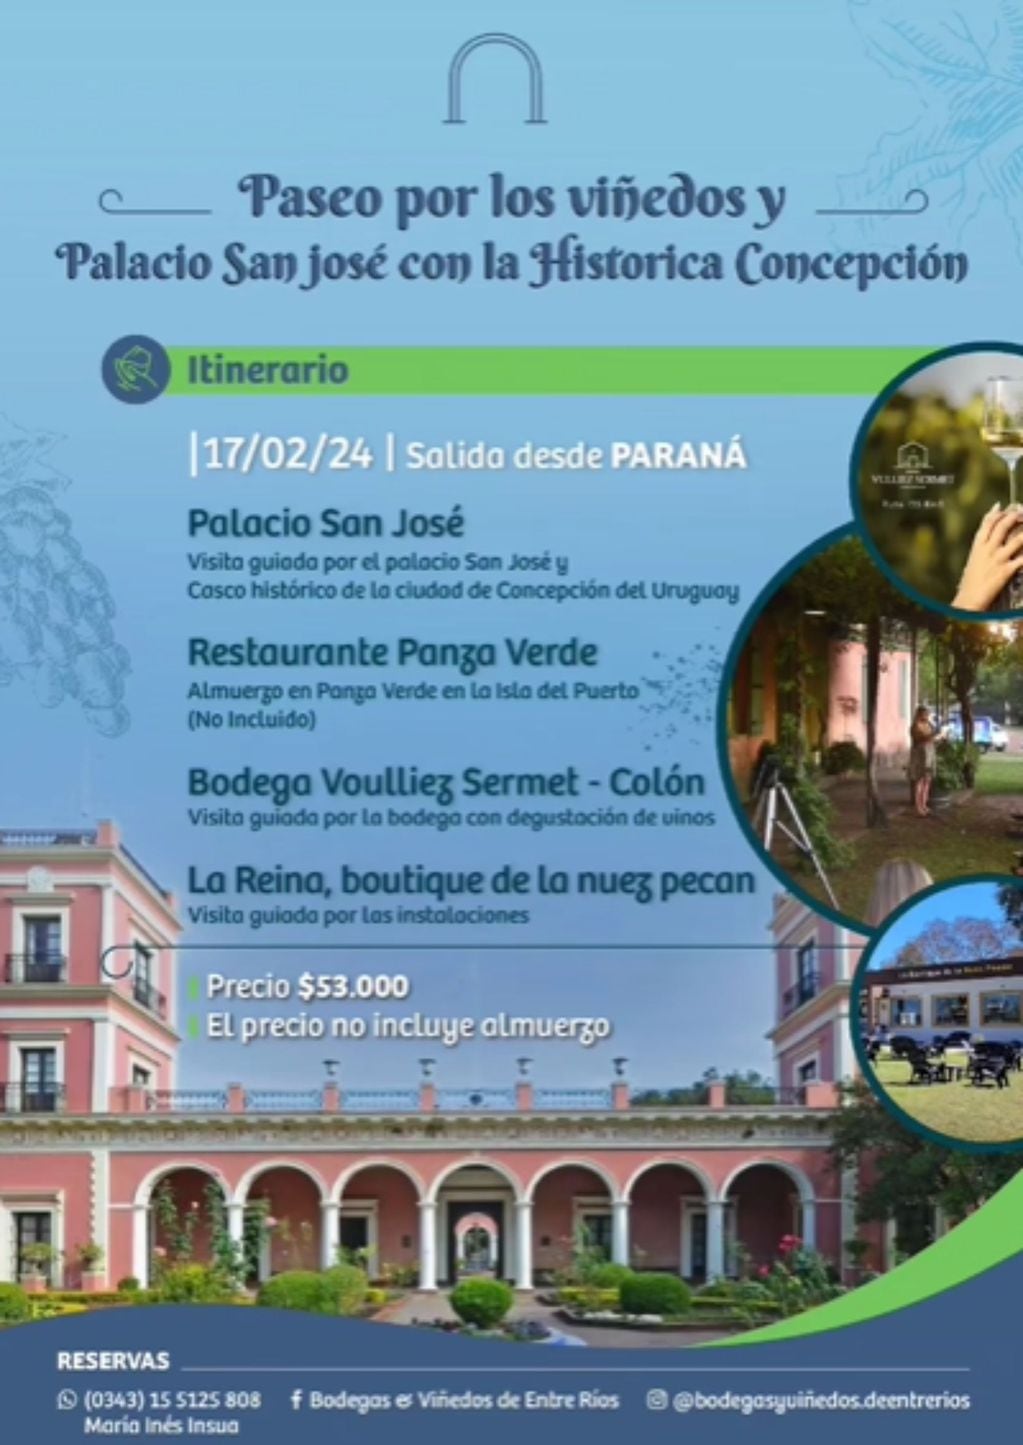 visita guiada al Palacio San José.